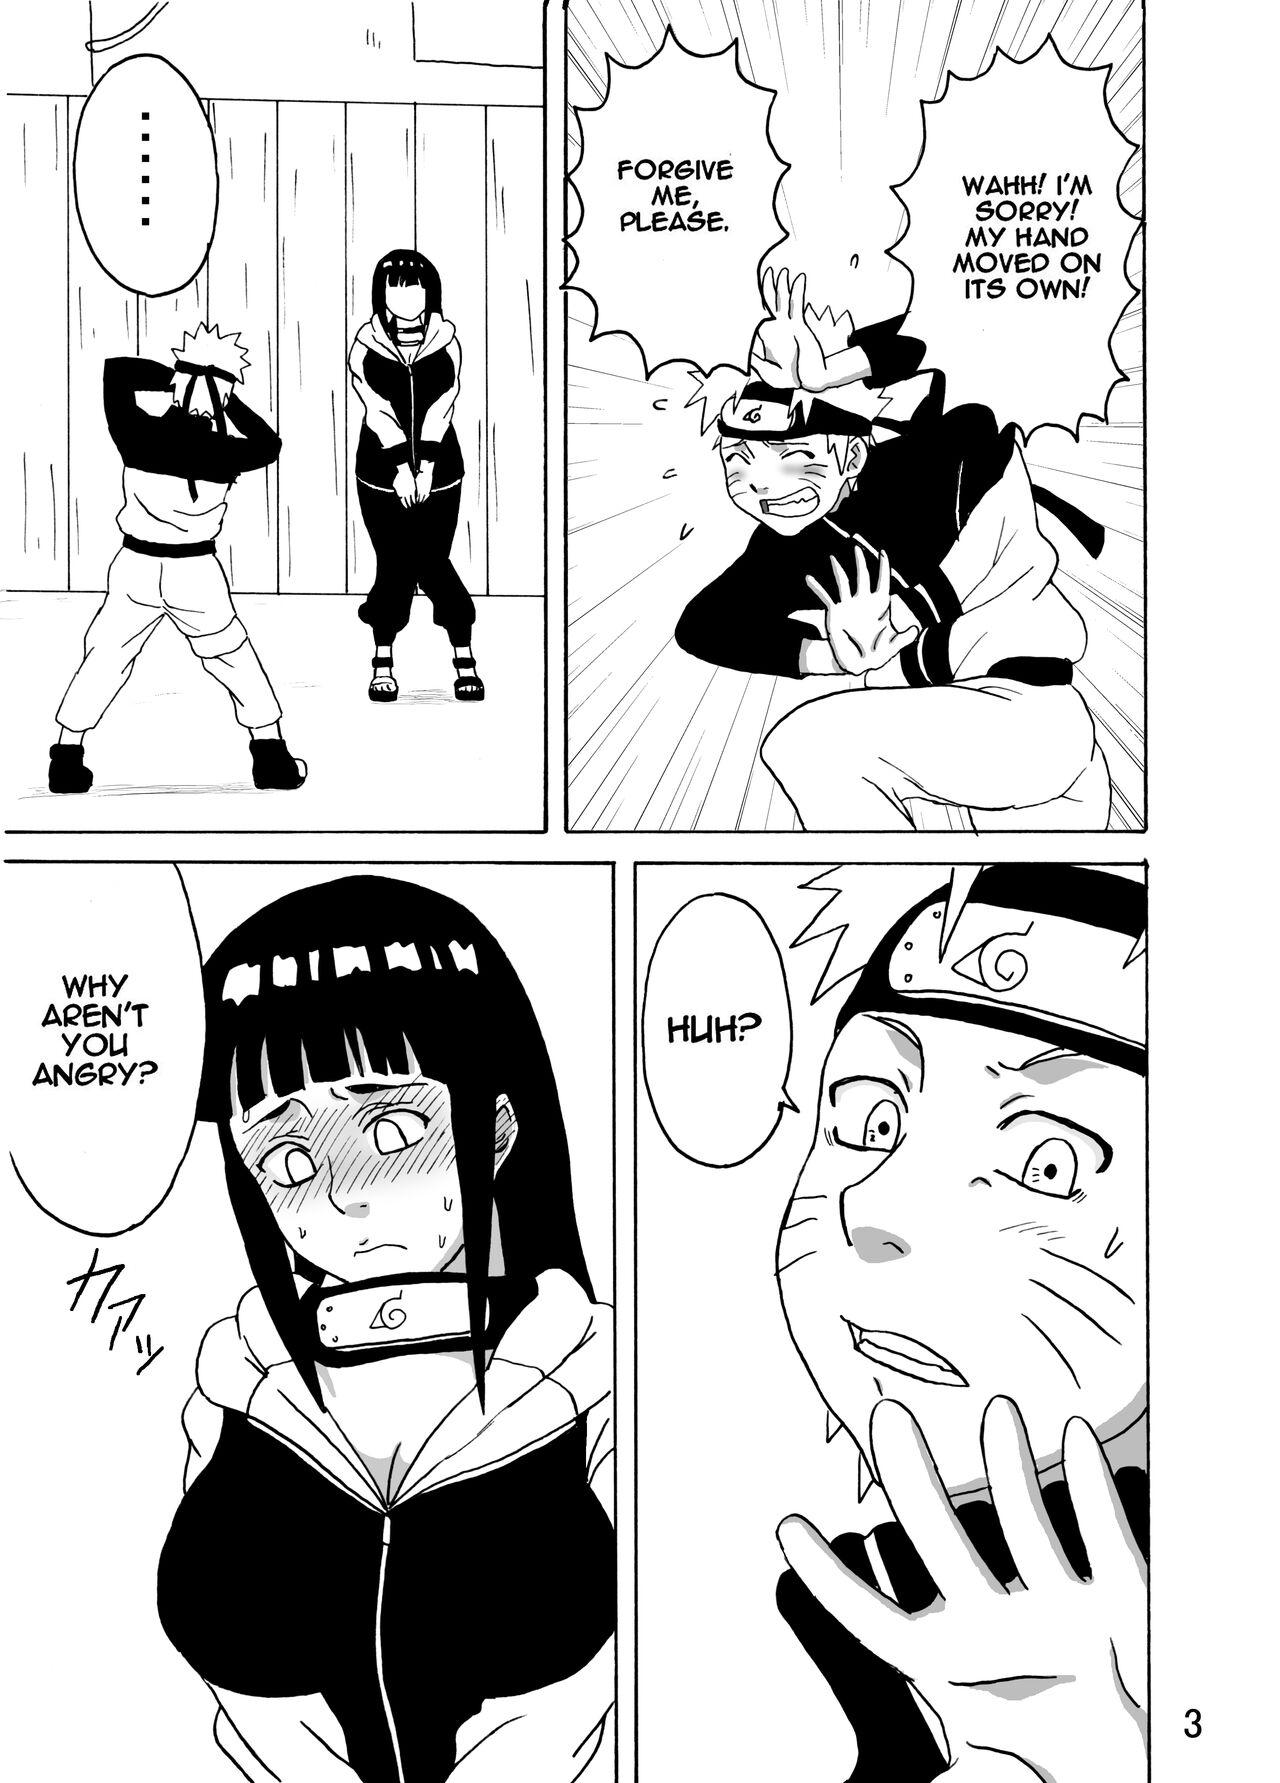 Gayfuck Hinata Ganbaru! | Hinata Fight! - Naruto Hottie - Page 4